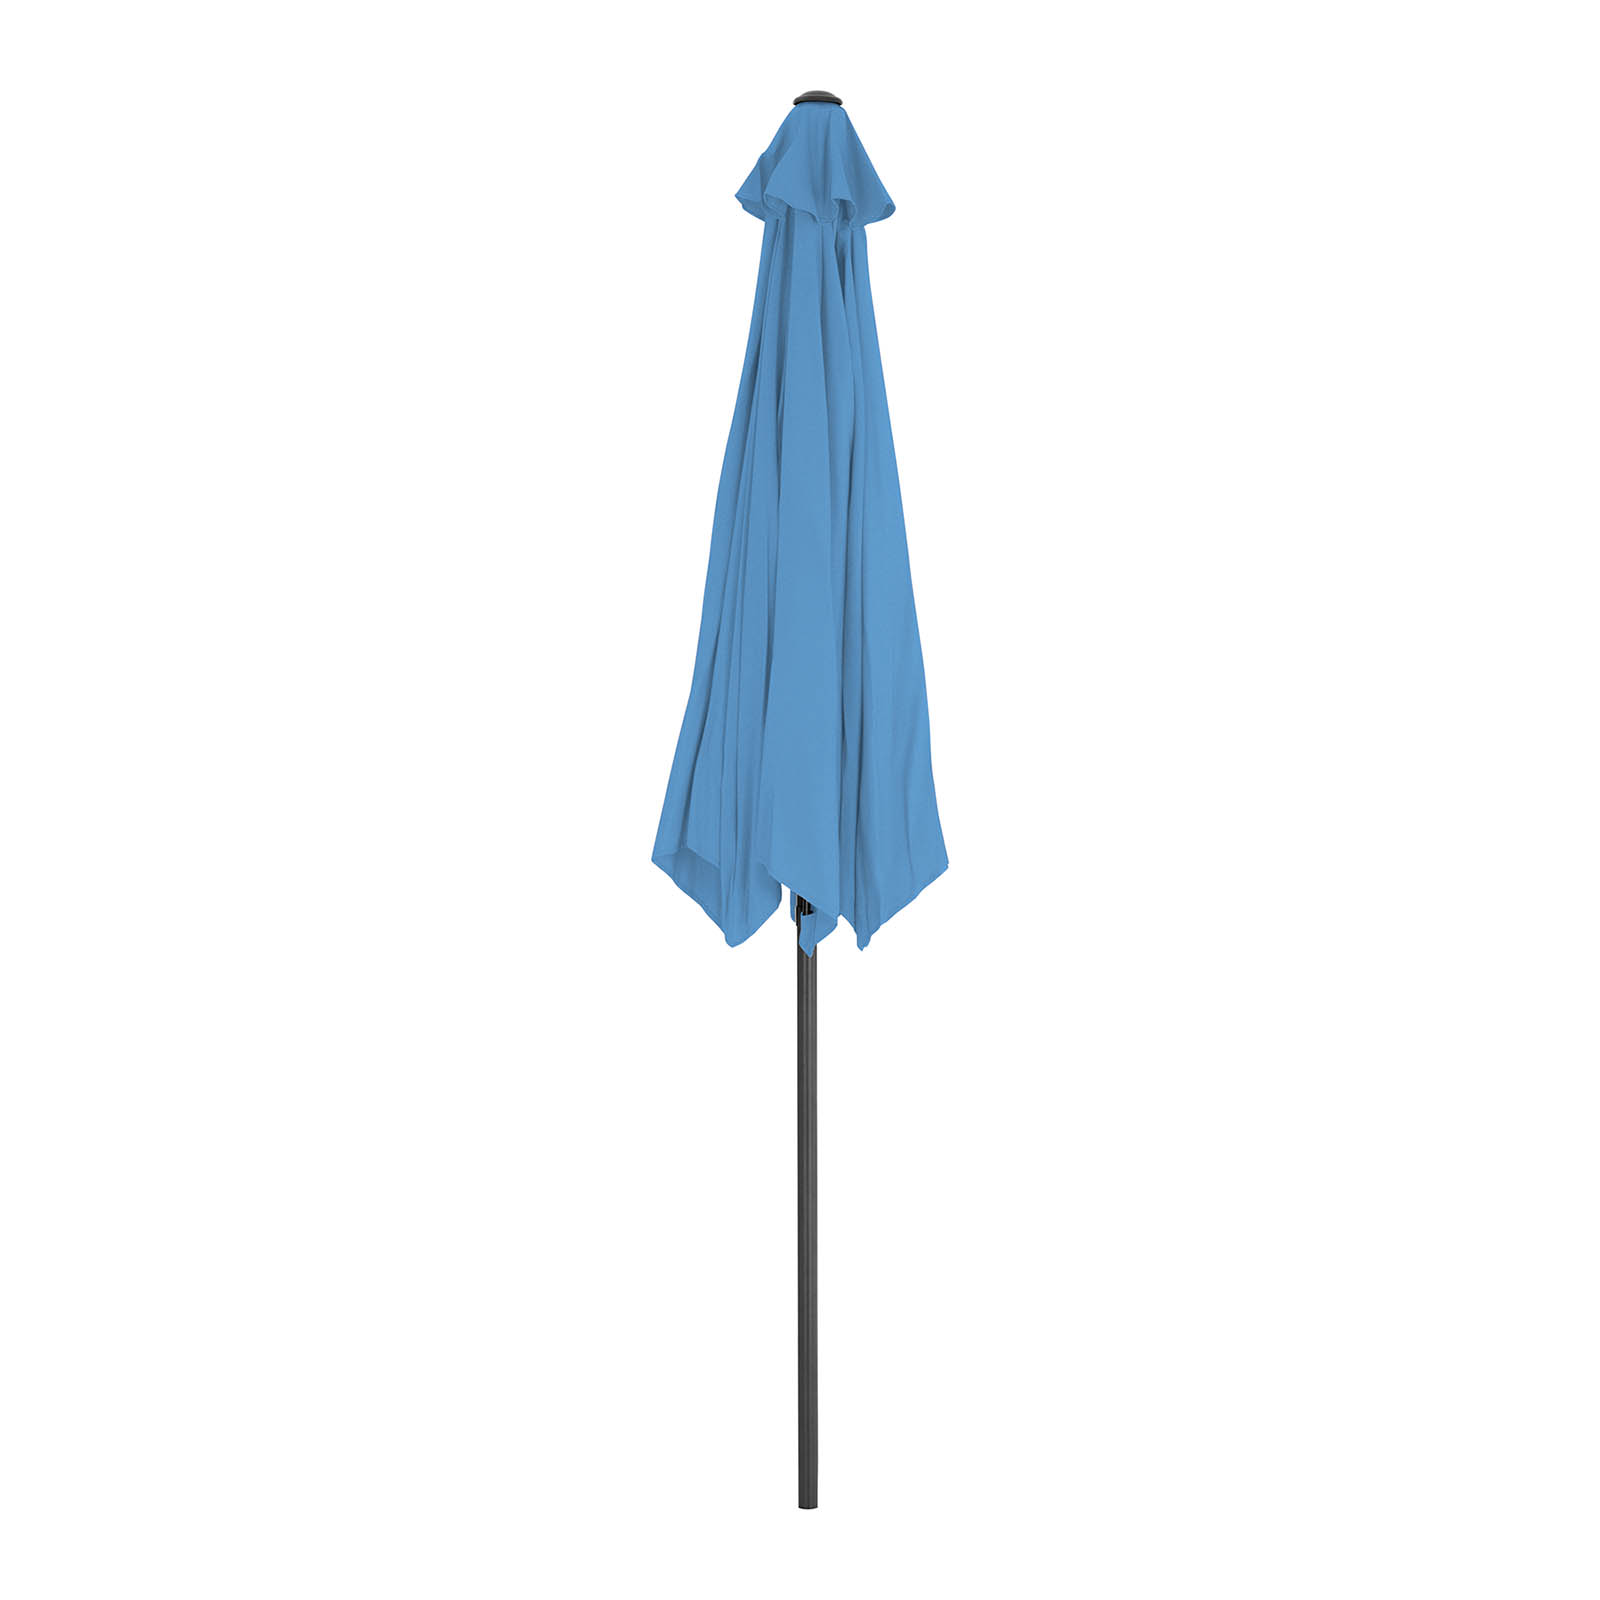 Velký slunečník - modrý - šestihranný - Ø 300 cm - naklápěcí